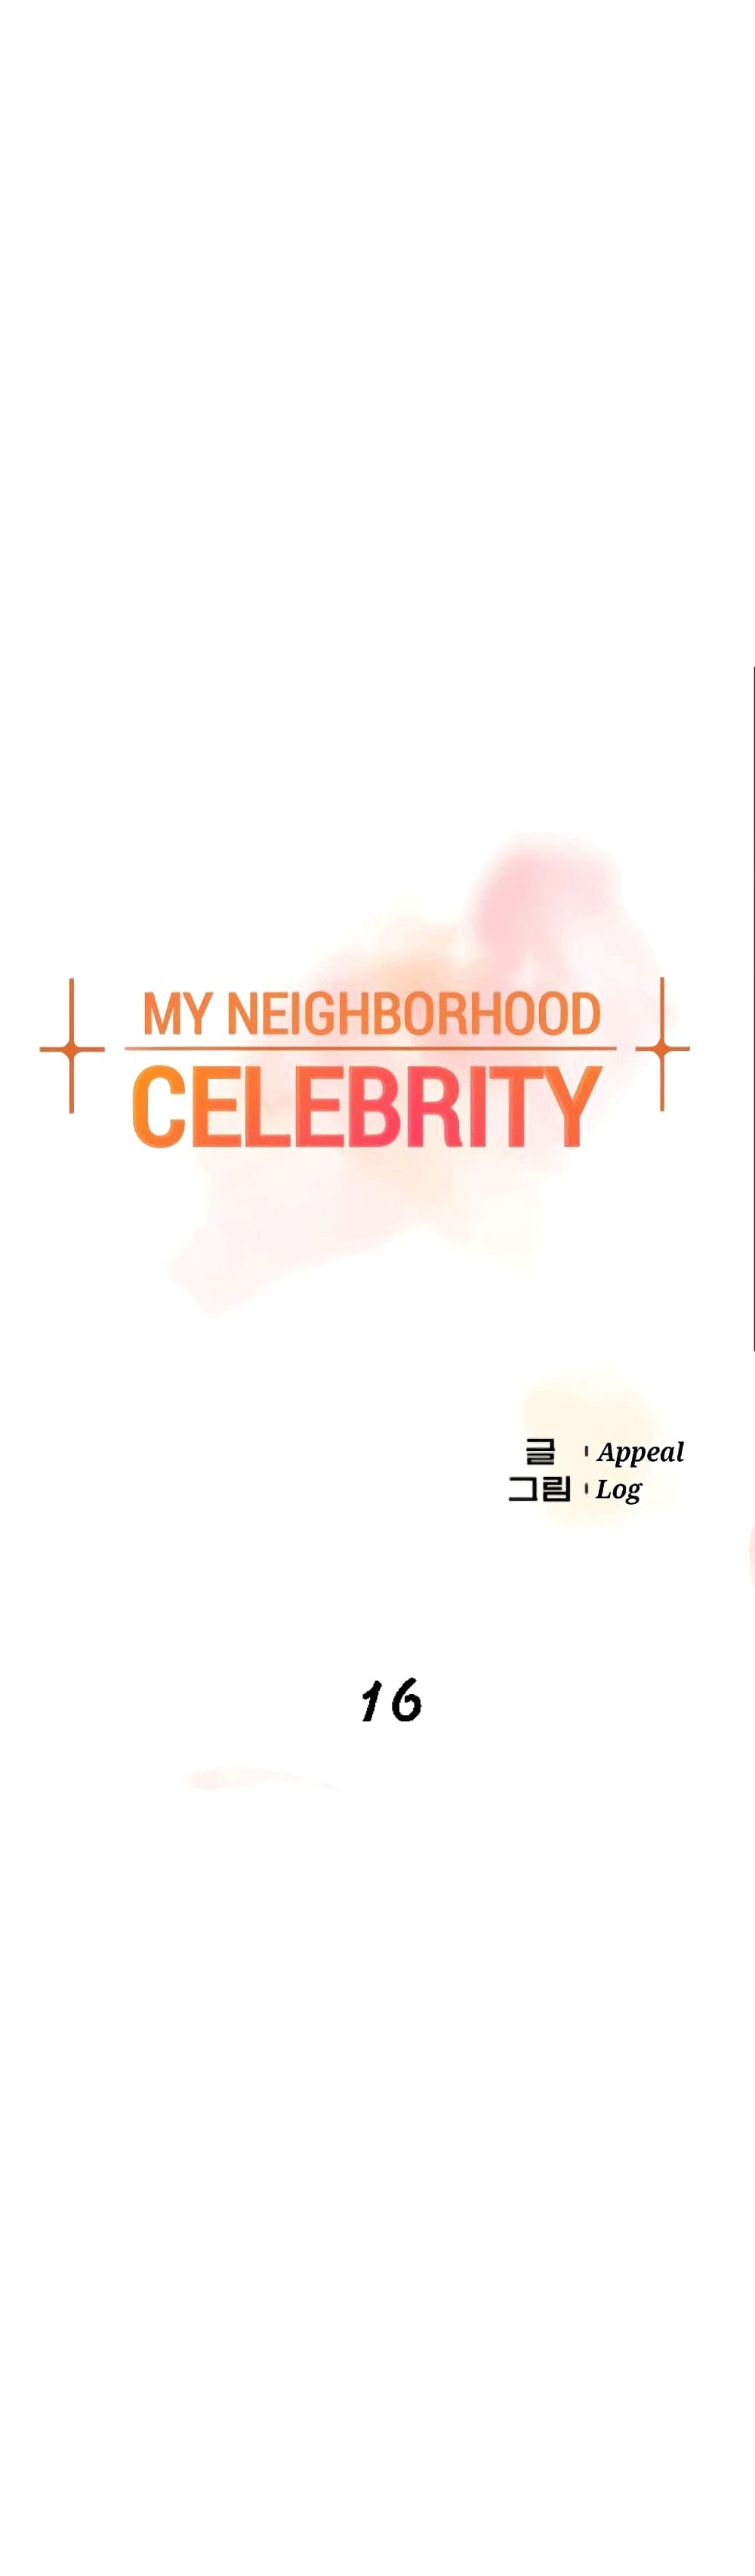 The Neighborhood Celebrity 16-16